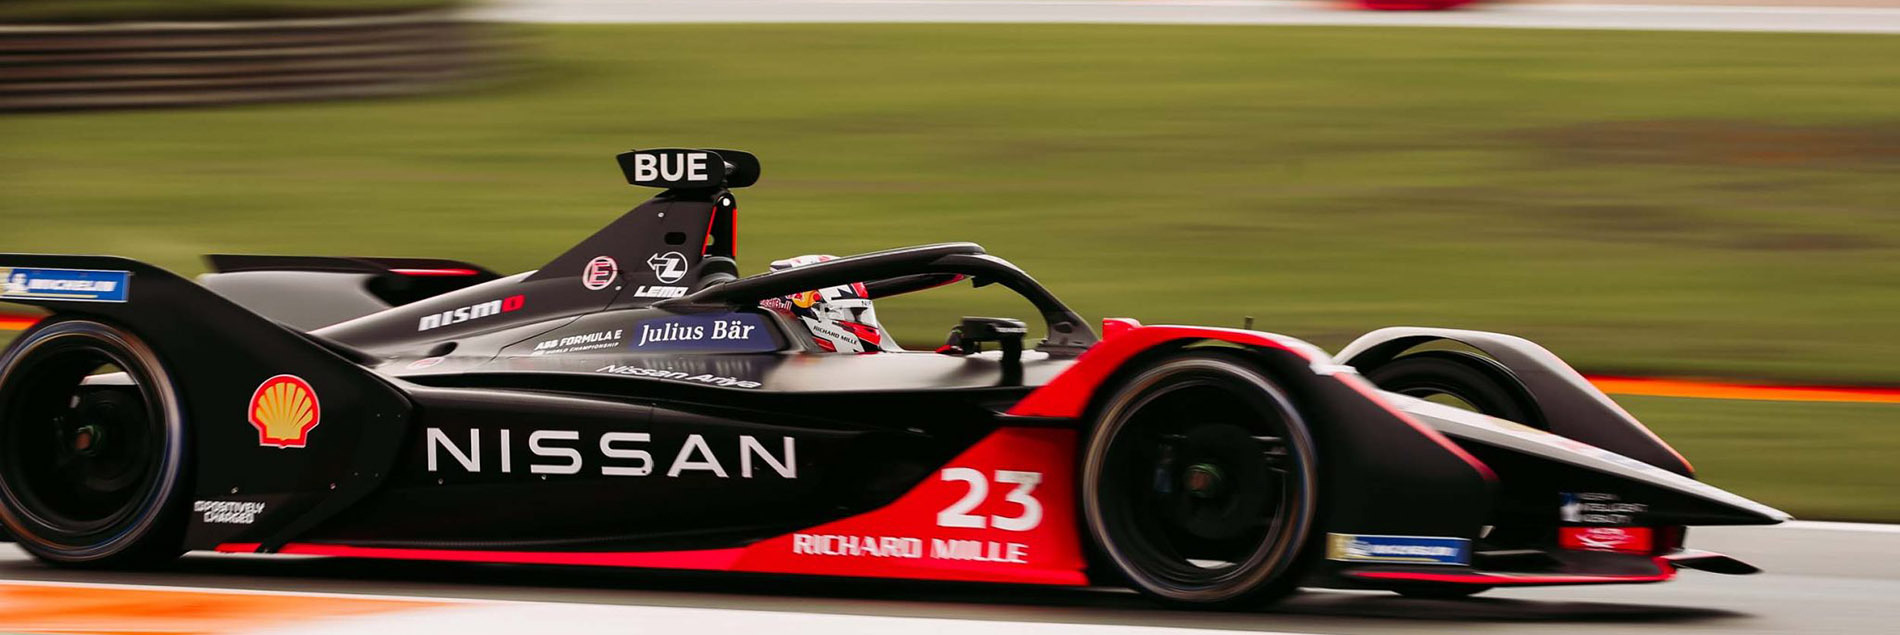 Команда Nissan e.dams направляется в Рим для участия в двойном заезде гонок серии Formula E